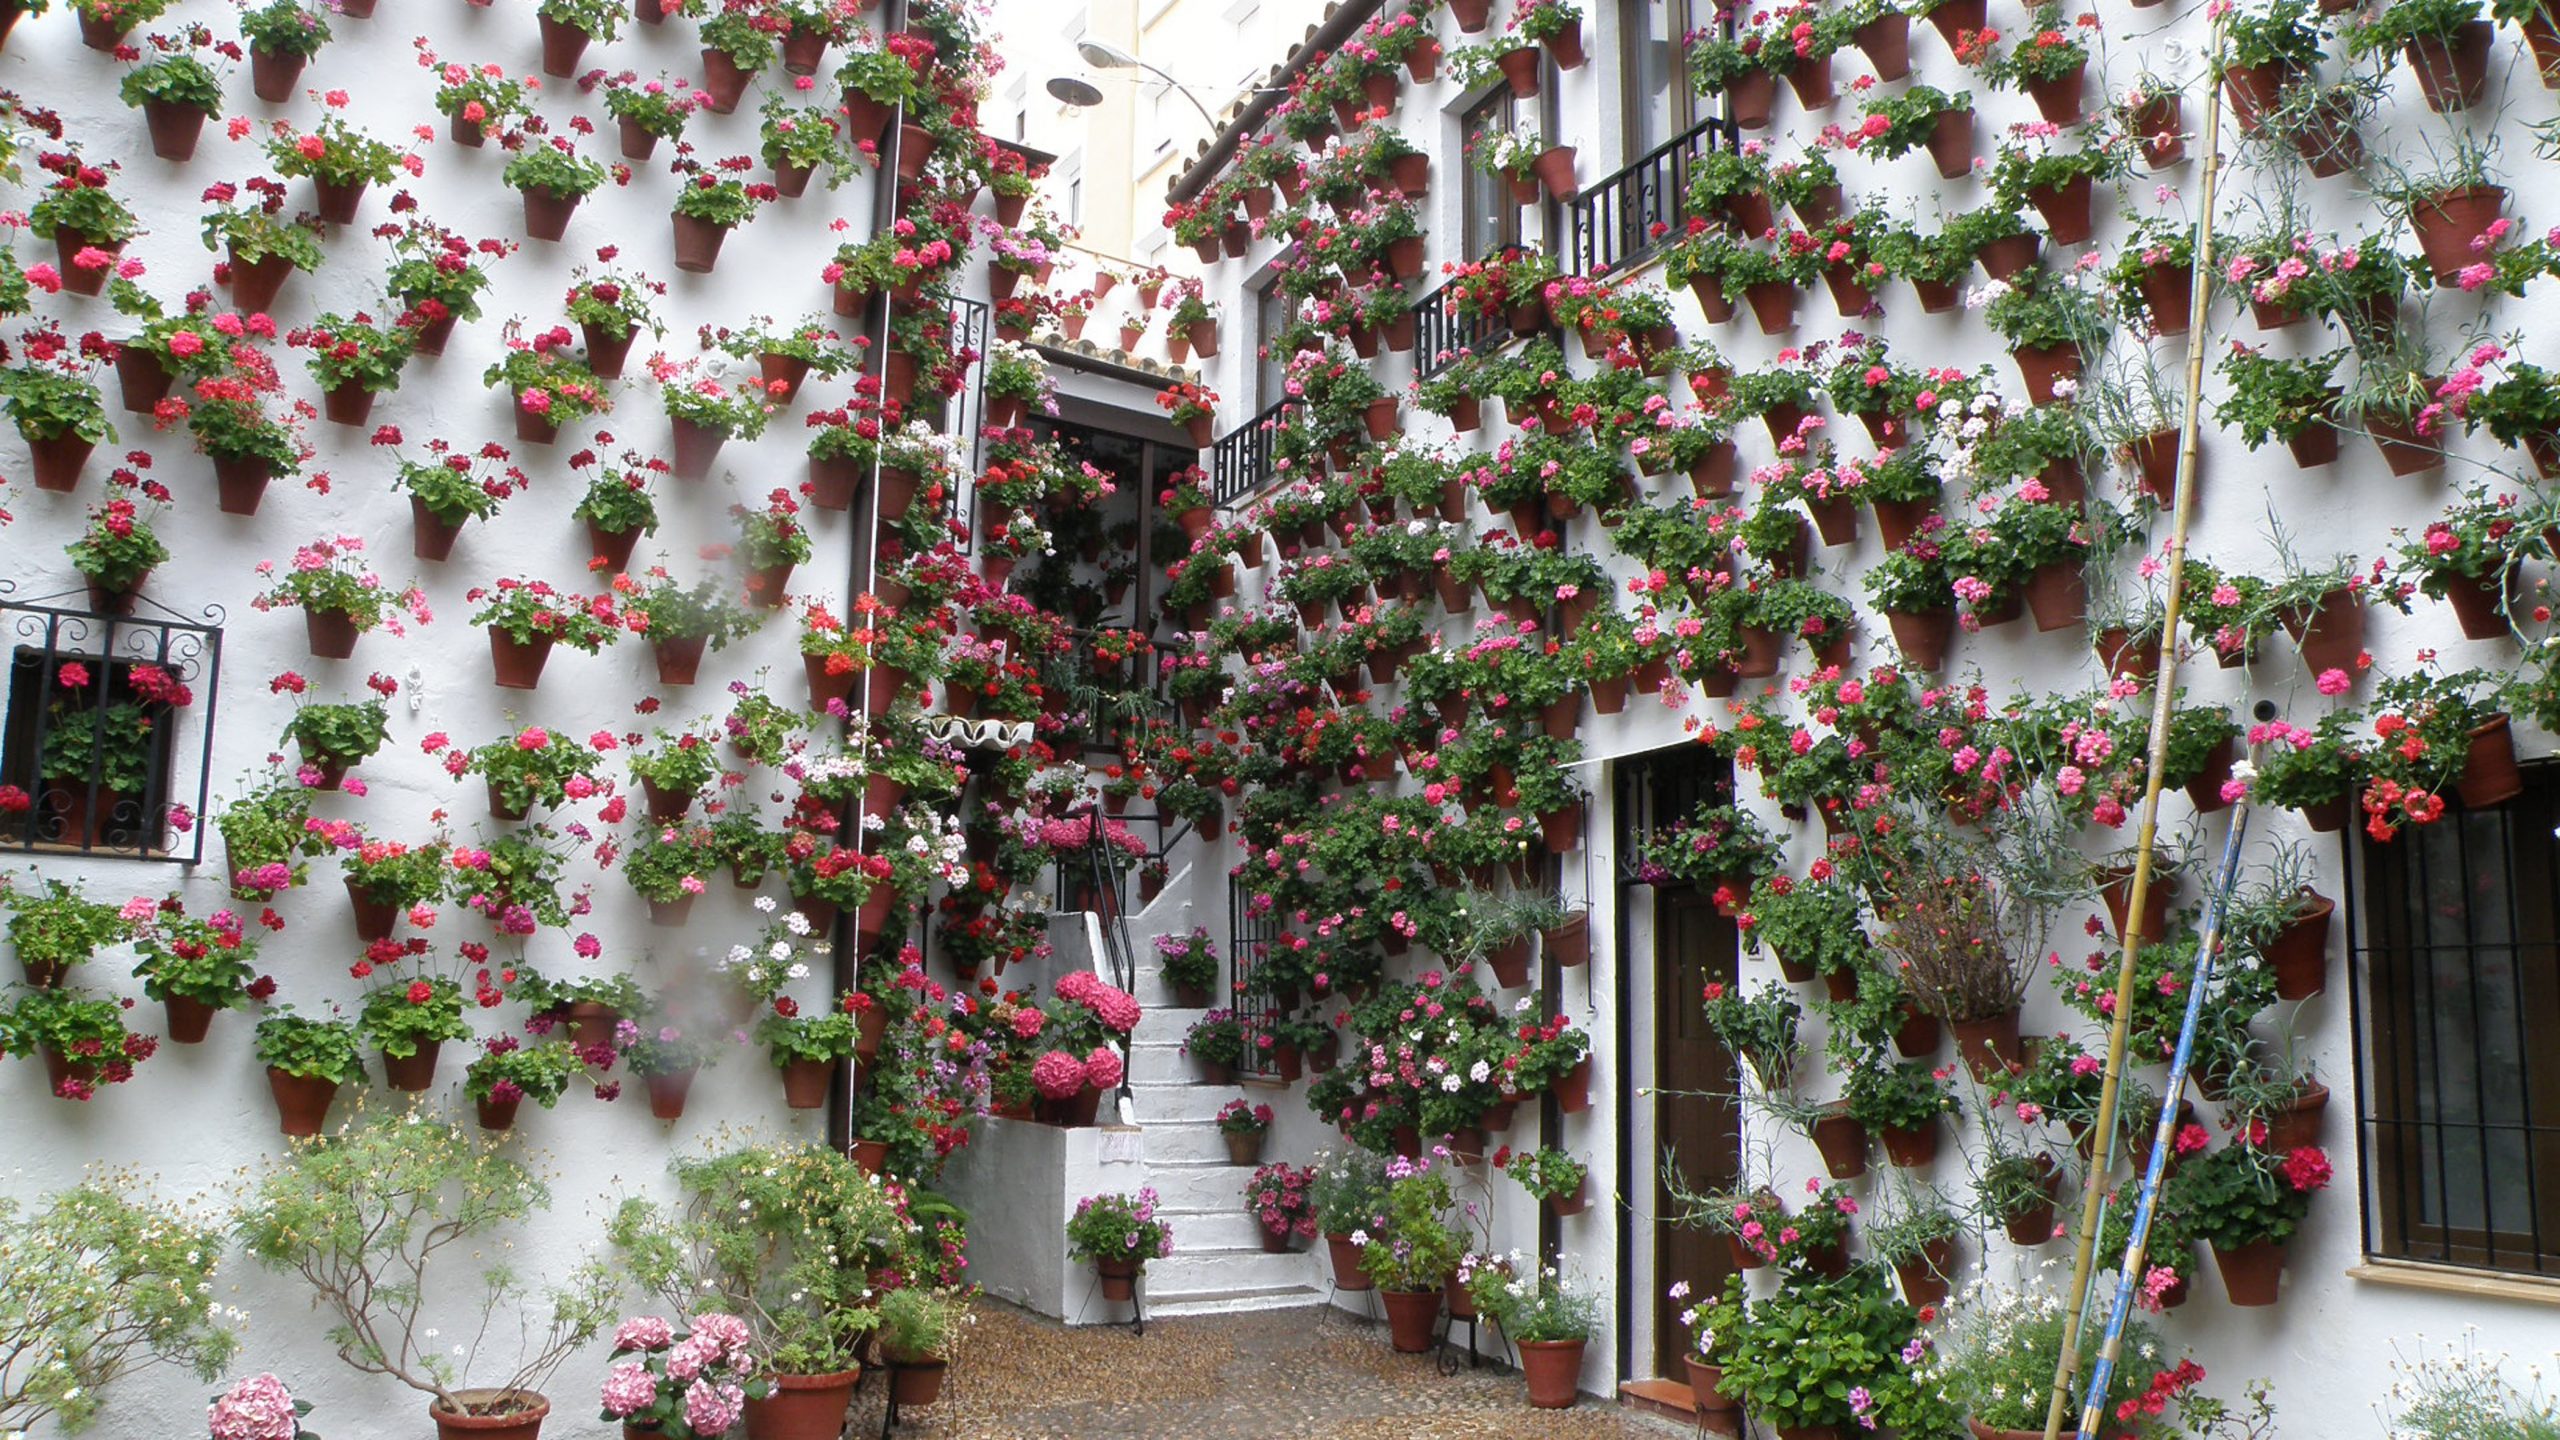 Patios decorados durante la primavera en España